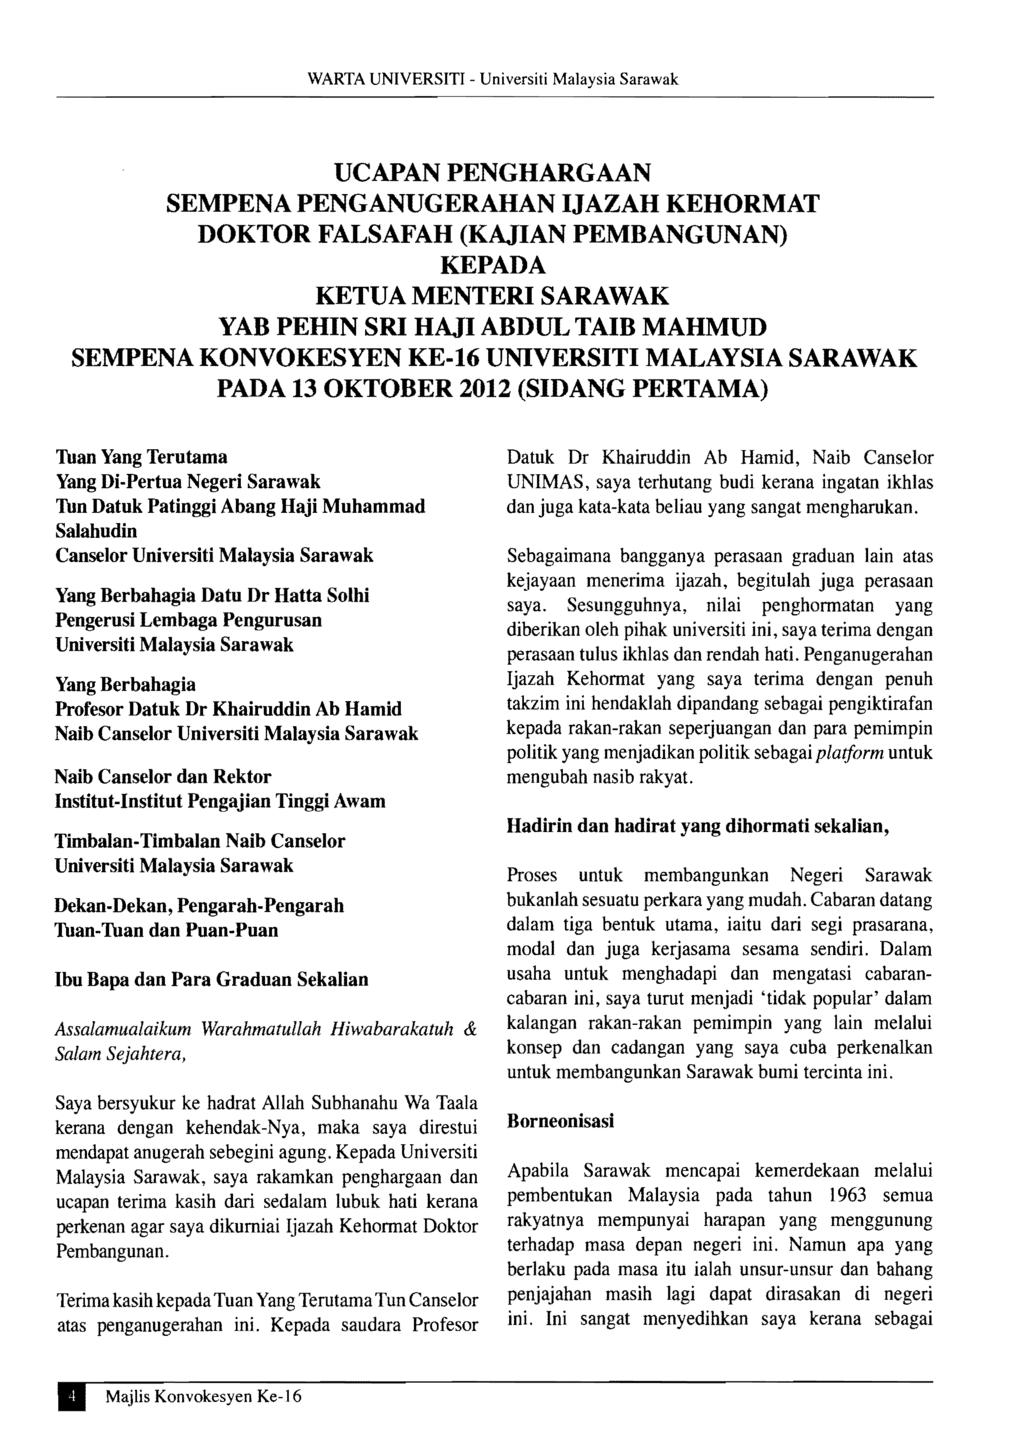 WARTA UNIVERSITI Universiti Malaysia Sarawak UCAPANPENGHARGAAN SEMPENA PENGANUGERAHAN IJAZAH KEHORMAT DOKTOR FALSAFAH (KAJIAN PEMBANGUNAN) KEPADA KETUAMENTERI SARAWAK YAB PEHIN SRI HAJI ABDUL TAIB